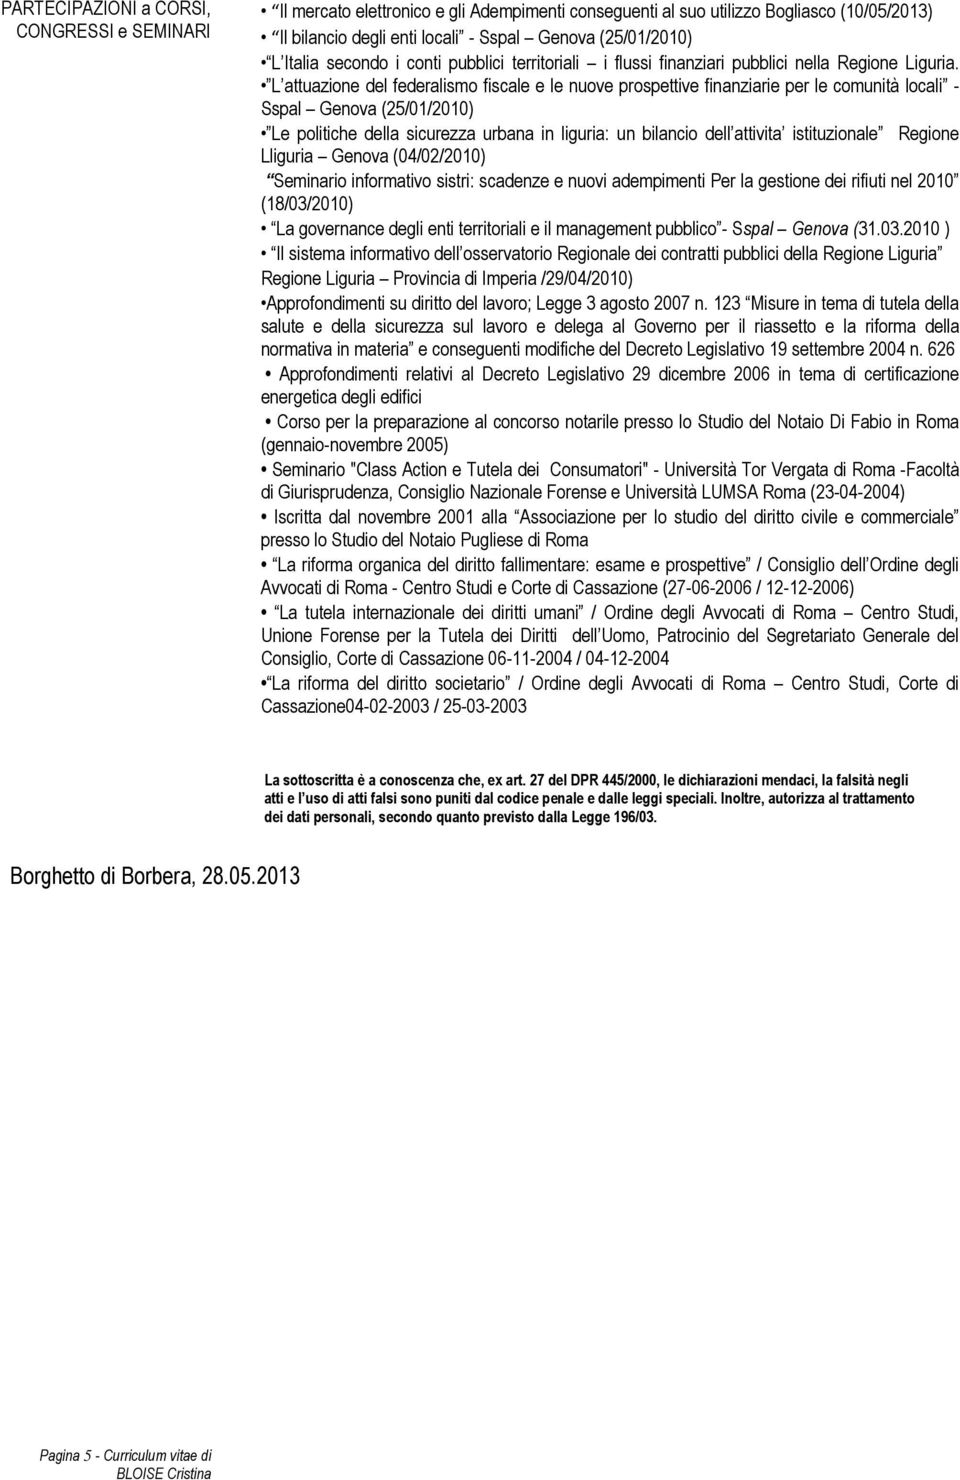 L attuazione del federalismo fiscale e le nuove prospettive finanziarie per le comunità locali - Sspal Genova (25/01/2010) Le politiche della sicurezza urbana in liguria: un bilancio dell attivita